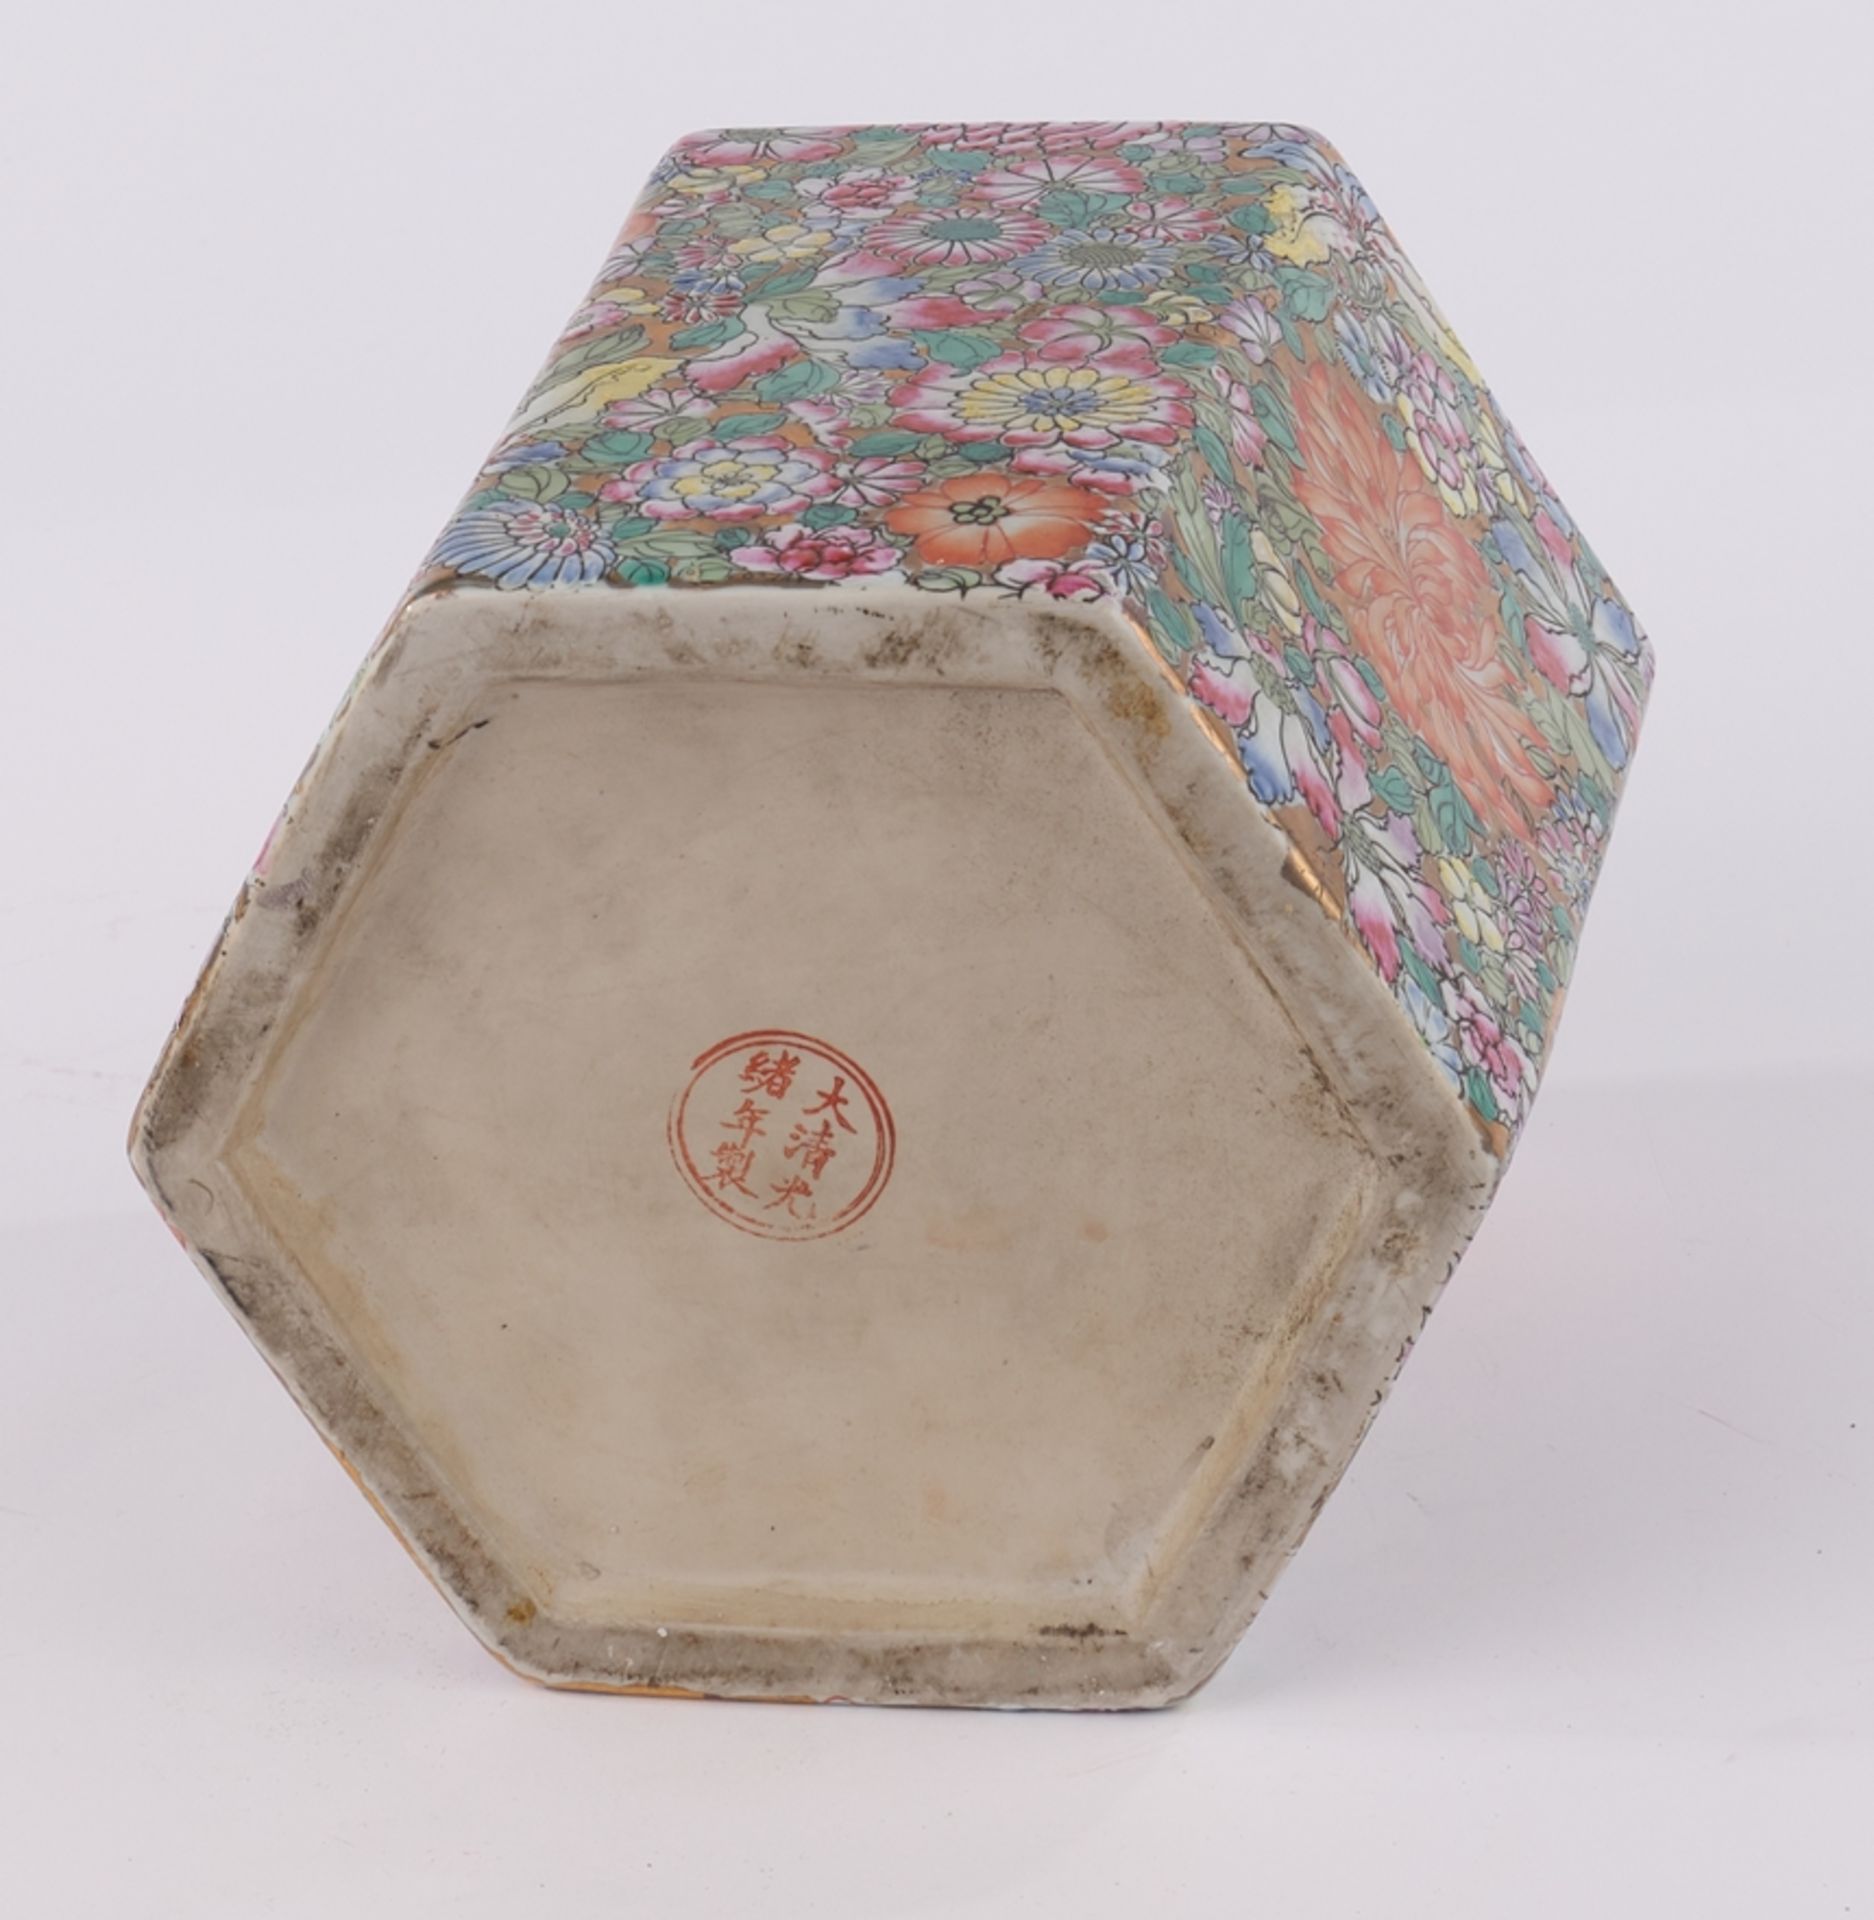 Deckeldose, China, spätes 20. Jh., Porzellan, mille fiori Dekor, polychrom und goldstaffiert, geste - Bild 2 aus 2